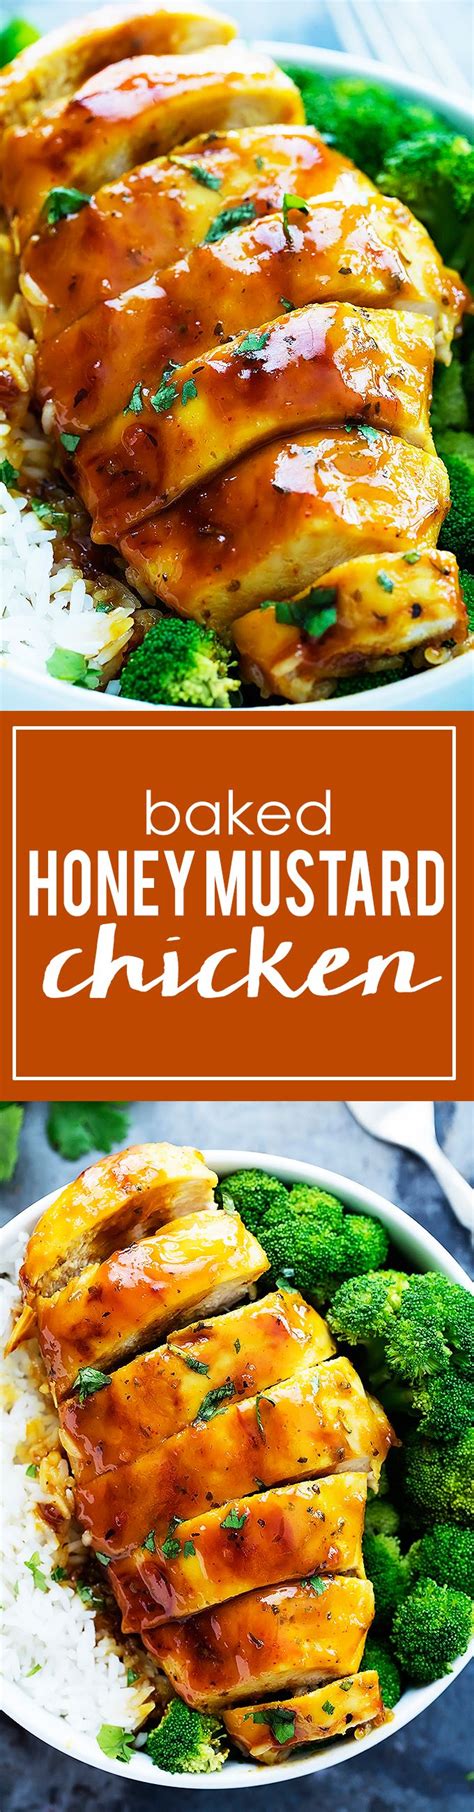 Baked Honey Mustard Chicken Creme De La Crumb Healthy Chicken Recipes Turkey Recipes Cooking